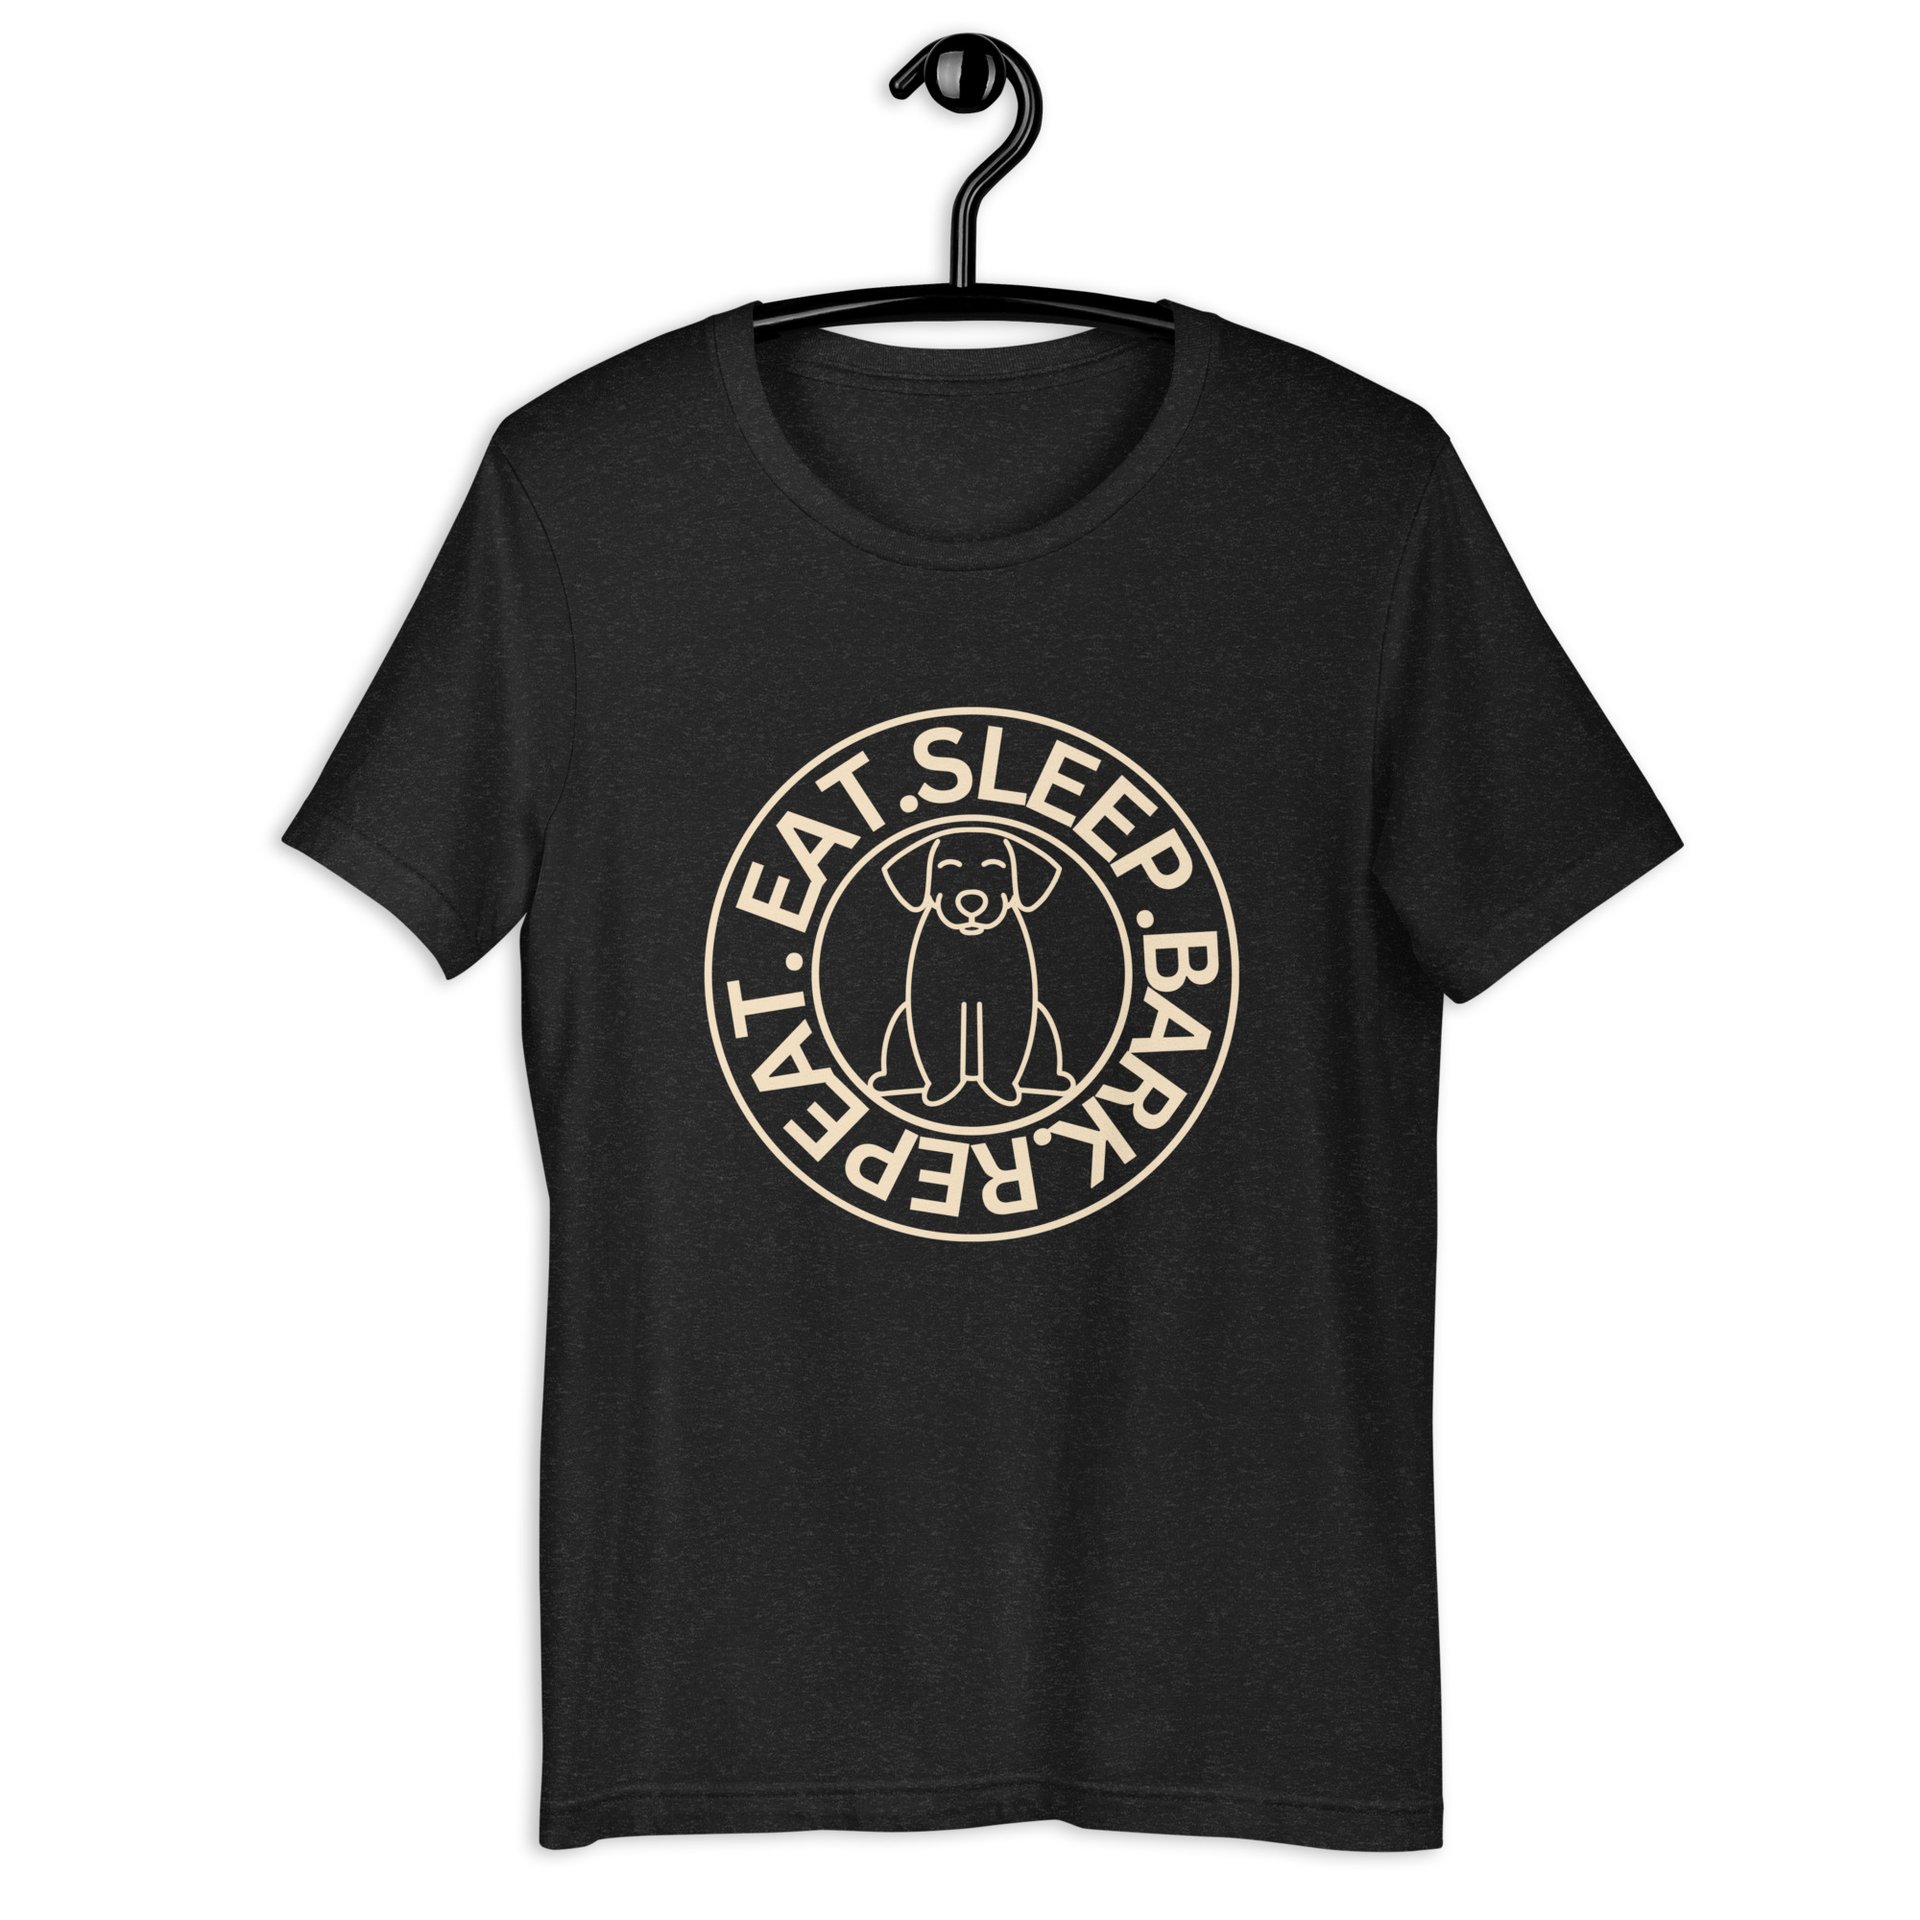 Eat Sleep Bark Repeat Ransylvanian Hound (Erdélyi Kopó) Unisex T-Shirt Black Heather